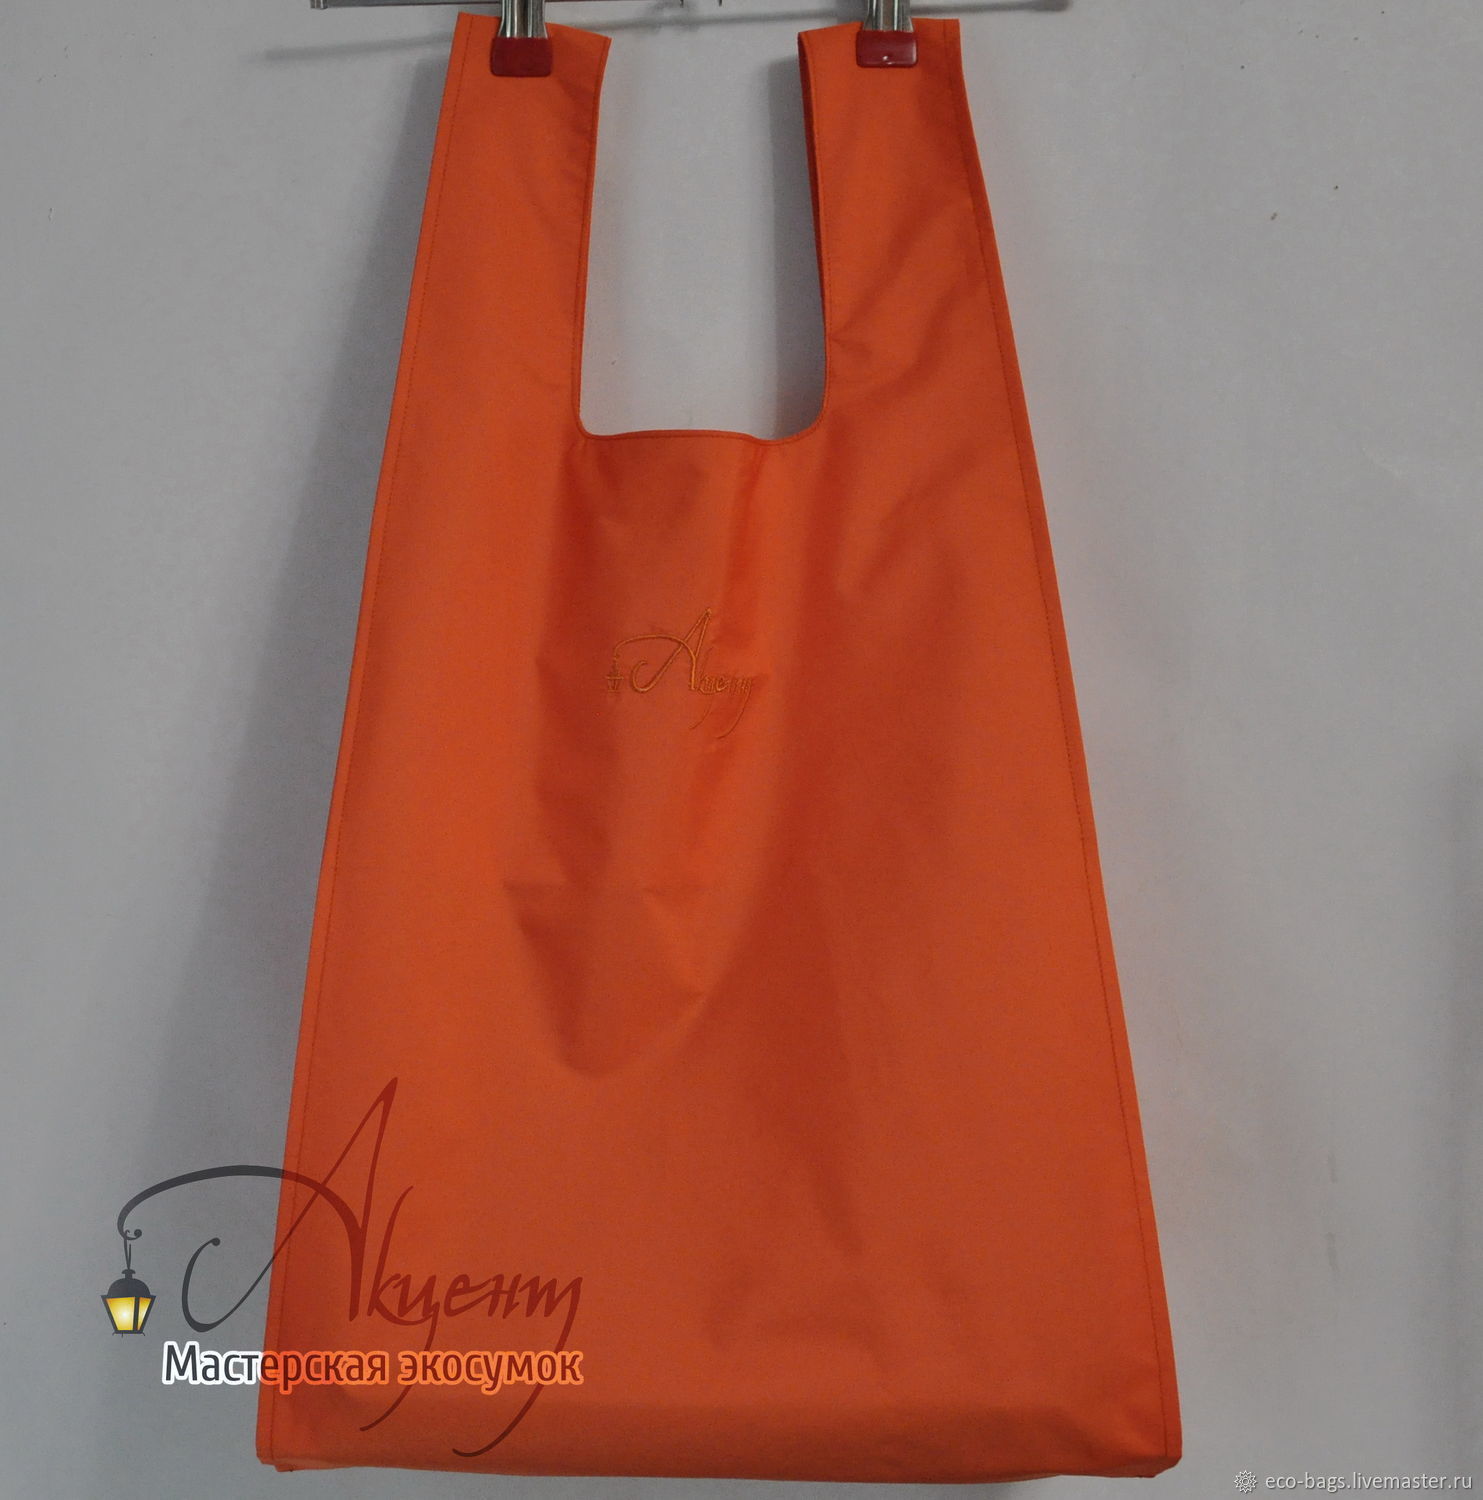 Комплект сумок для покупок "Красивая пара" оранжевая и терракотовая